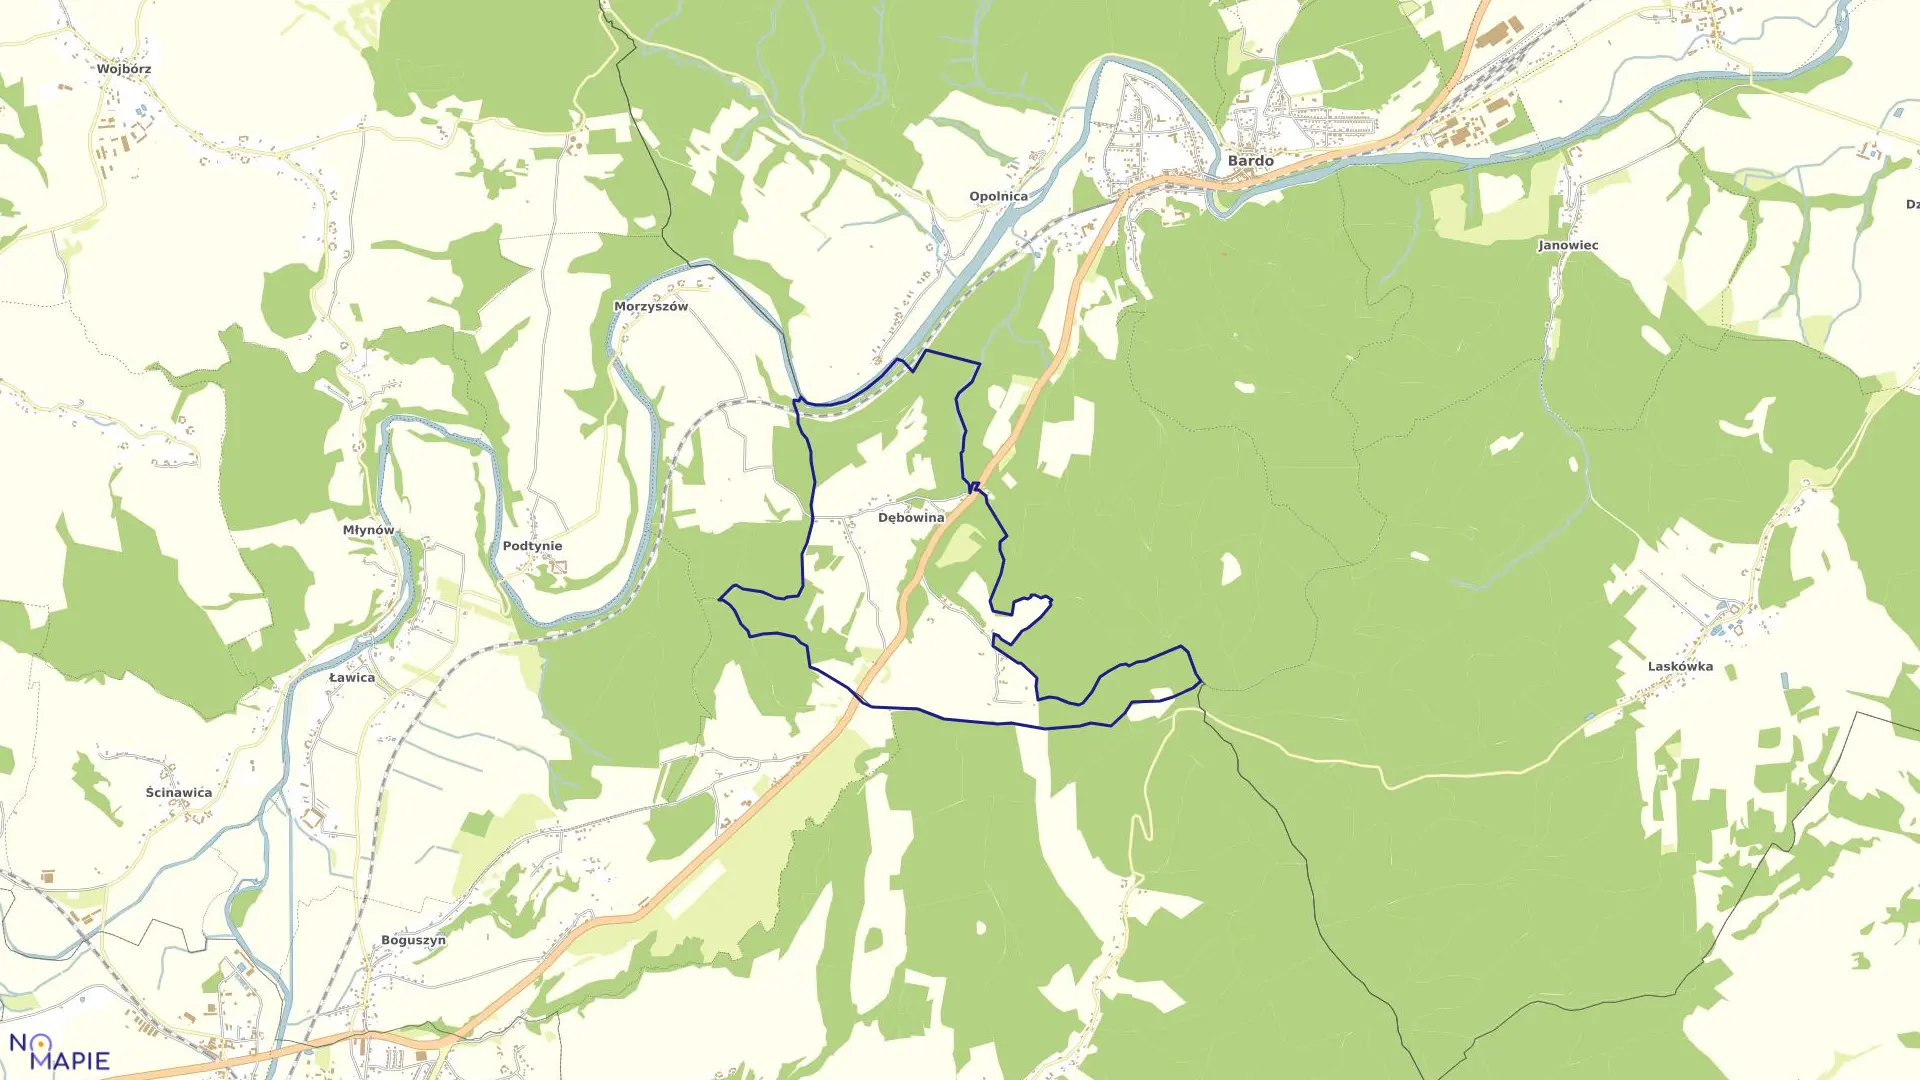 Mapa obrębu DĘBOWINA w gminie Bardo